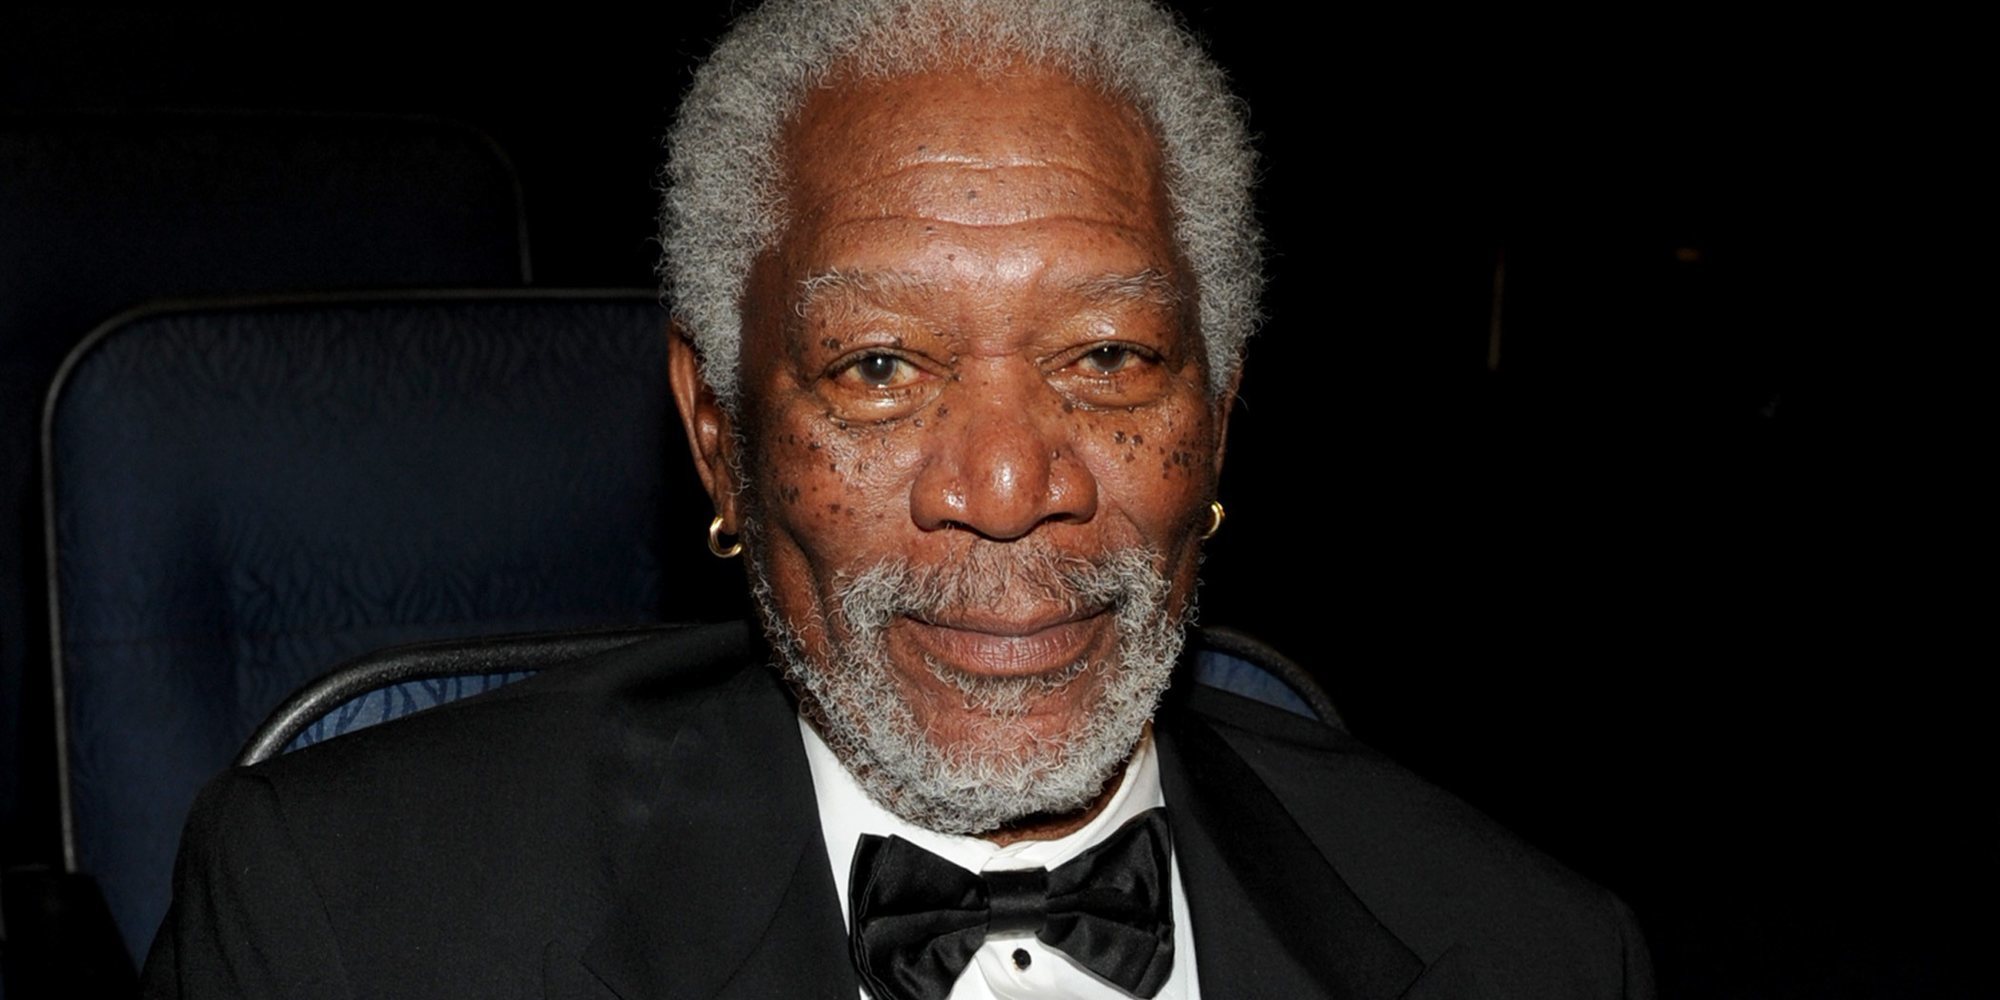 Morgan Freeman, acusado de acoso y comportamiento inapropiado